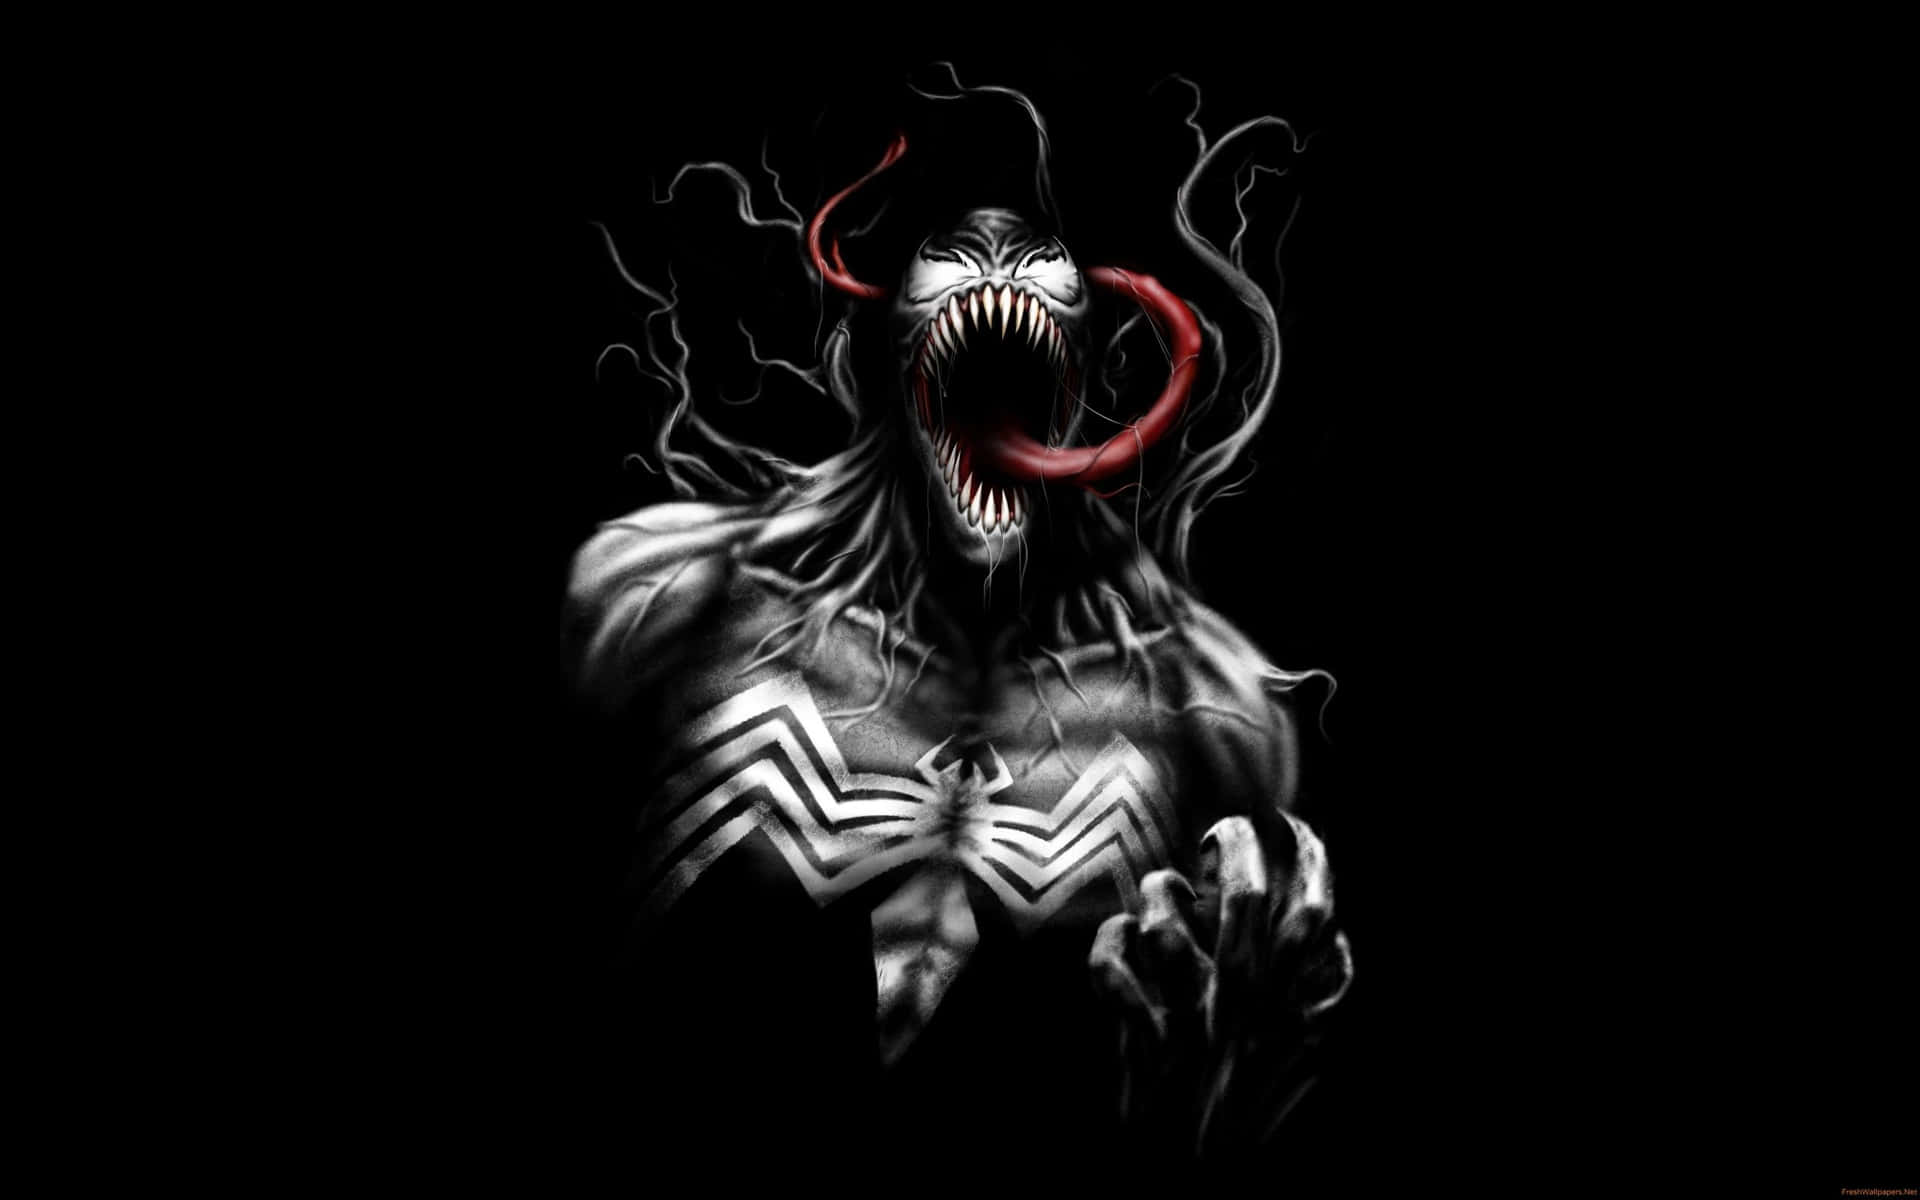 Umailustração Abstrata Deslumbrante Do Venom. Papel de Parede